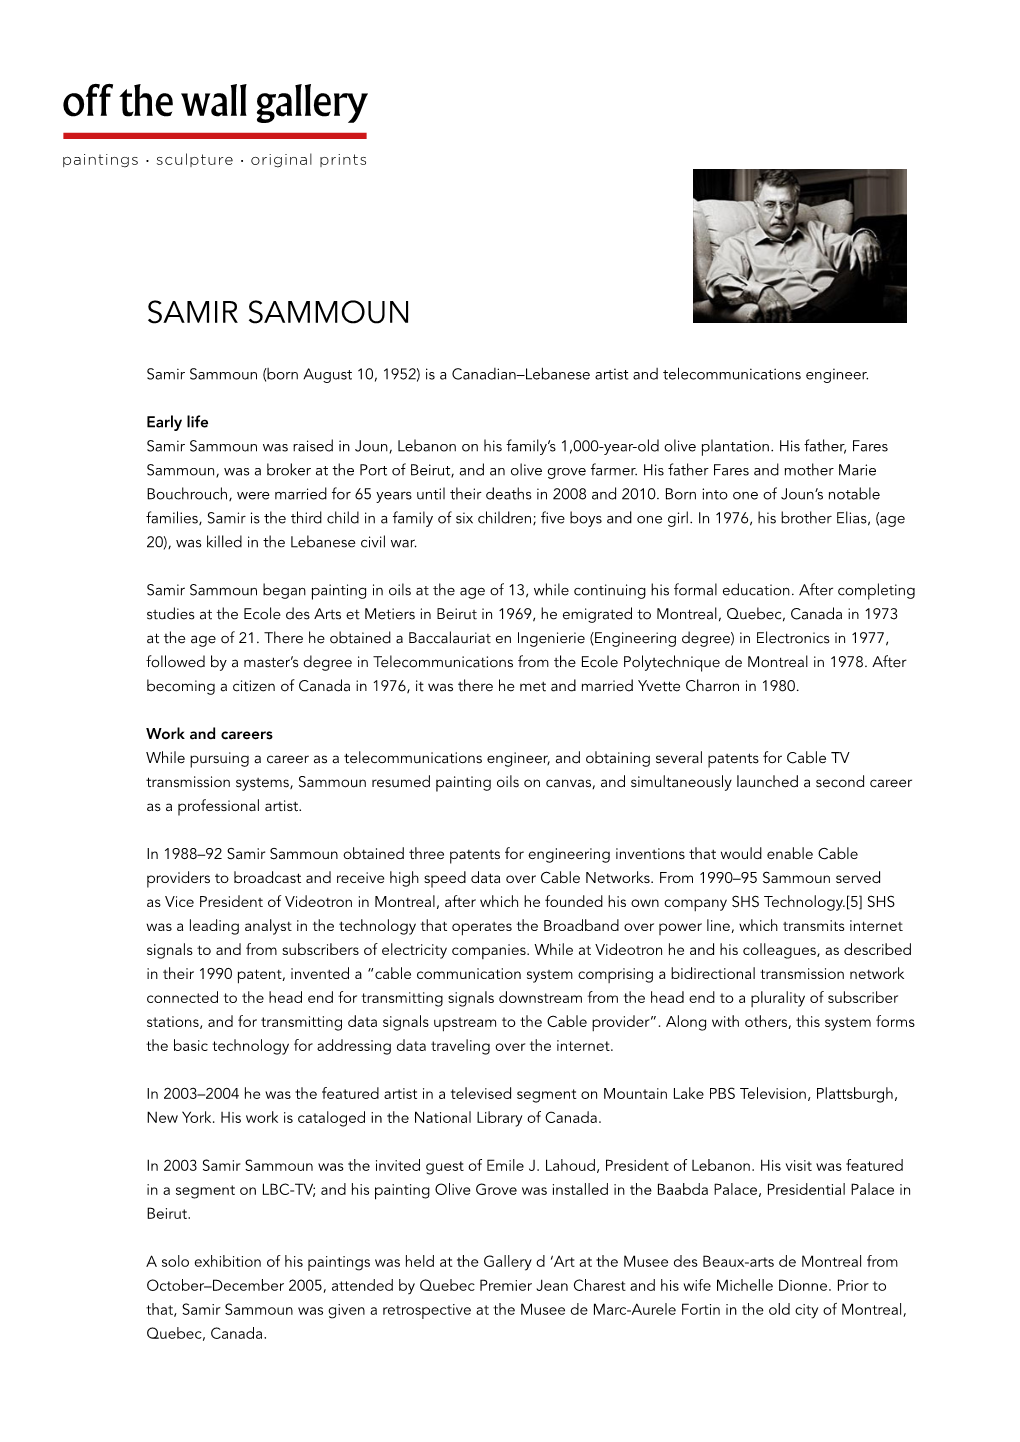 Samir Sammoun